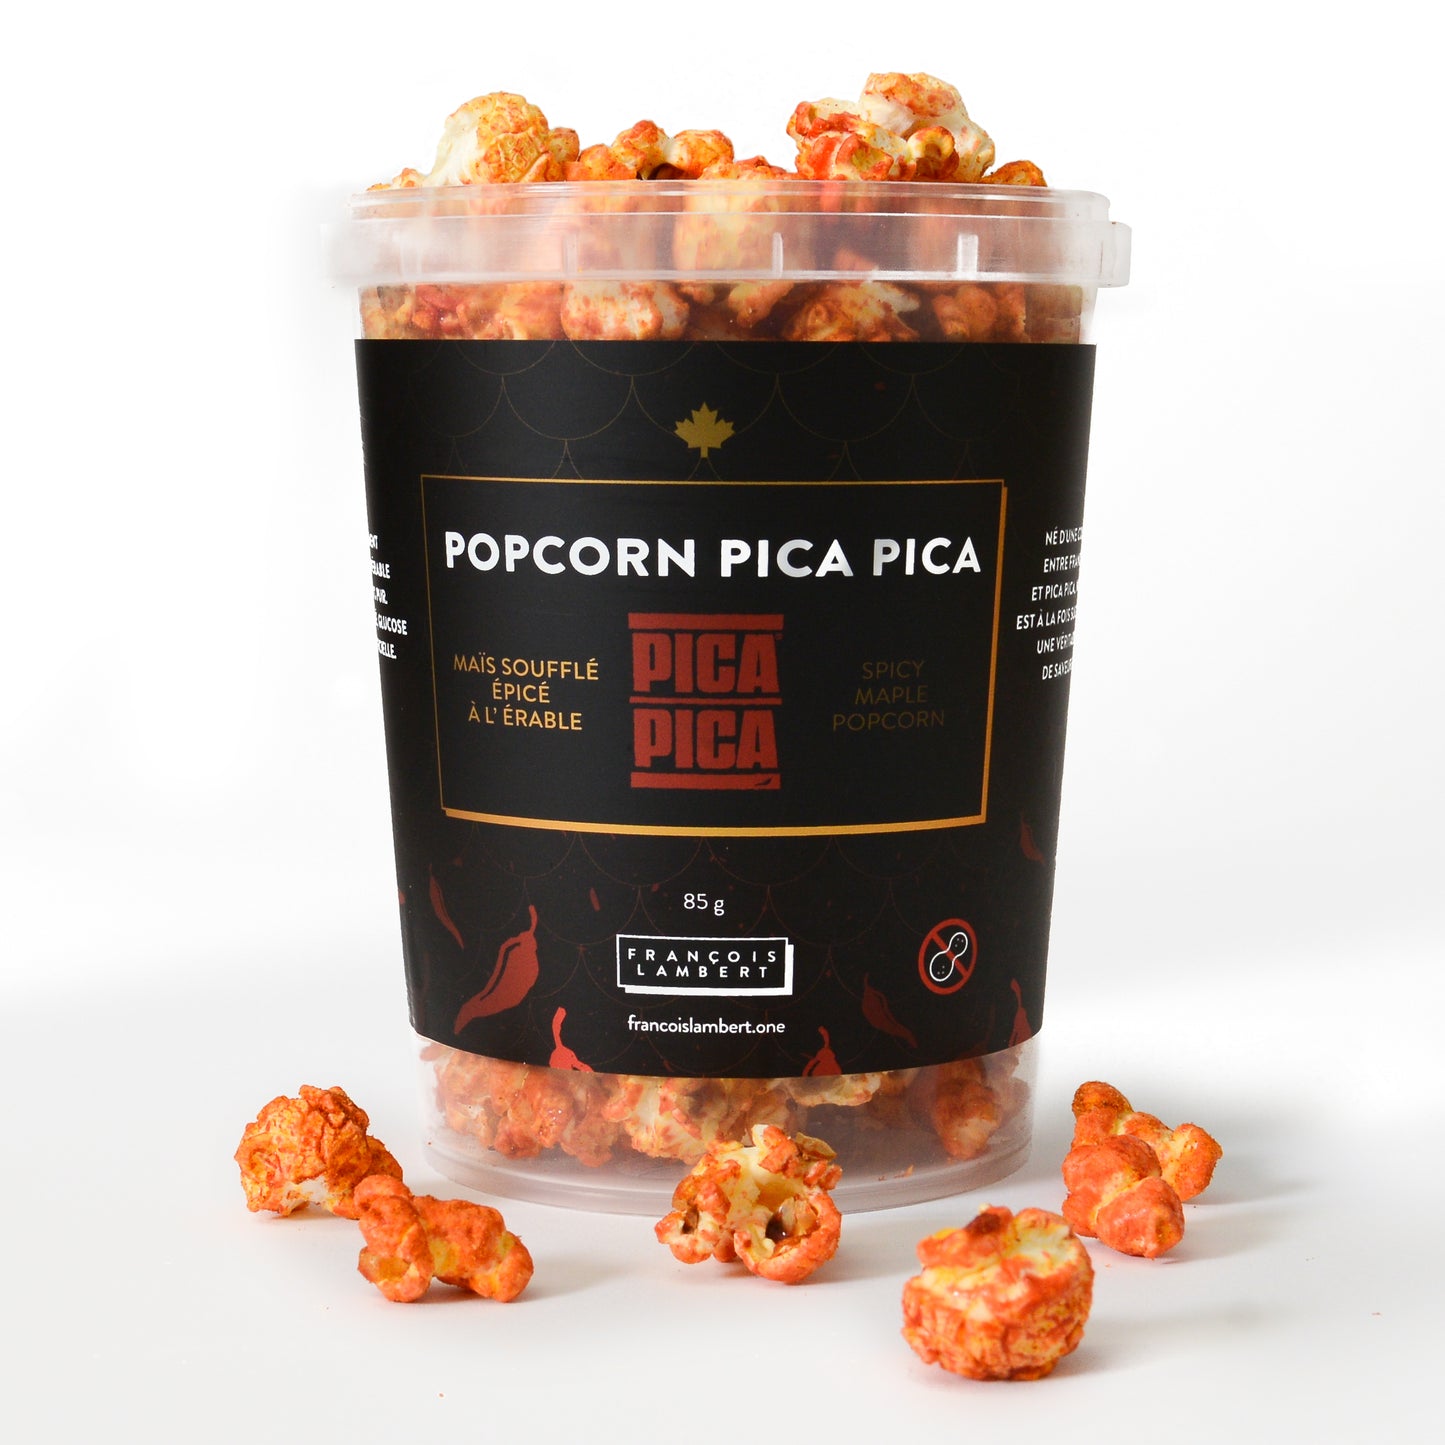 Popcorn Pica Pica